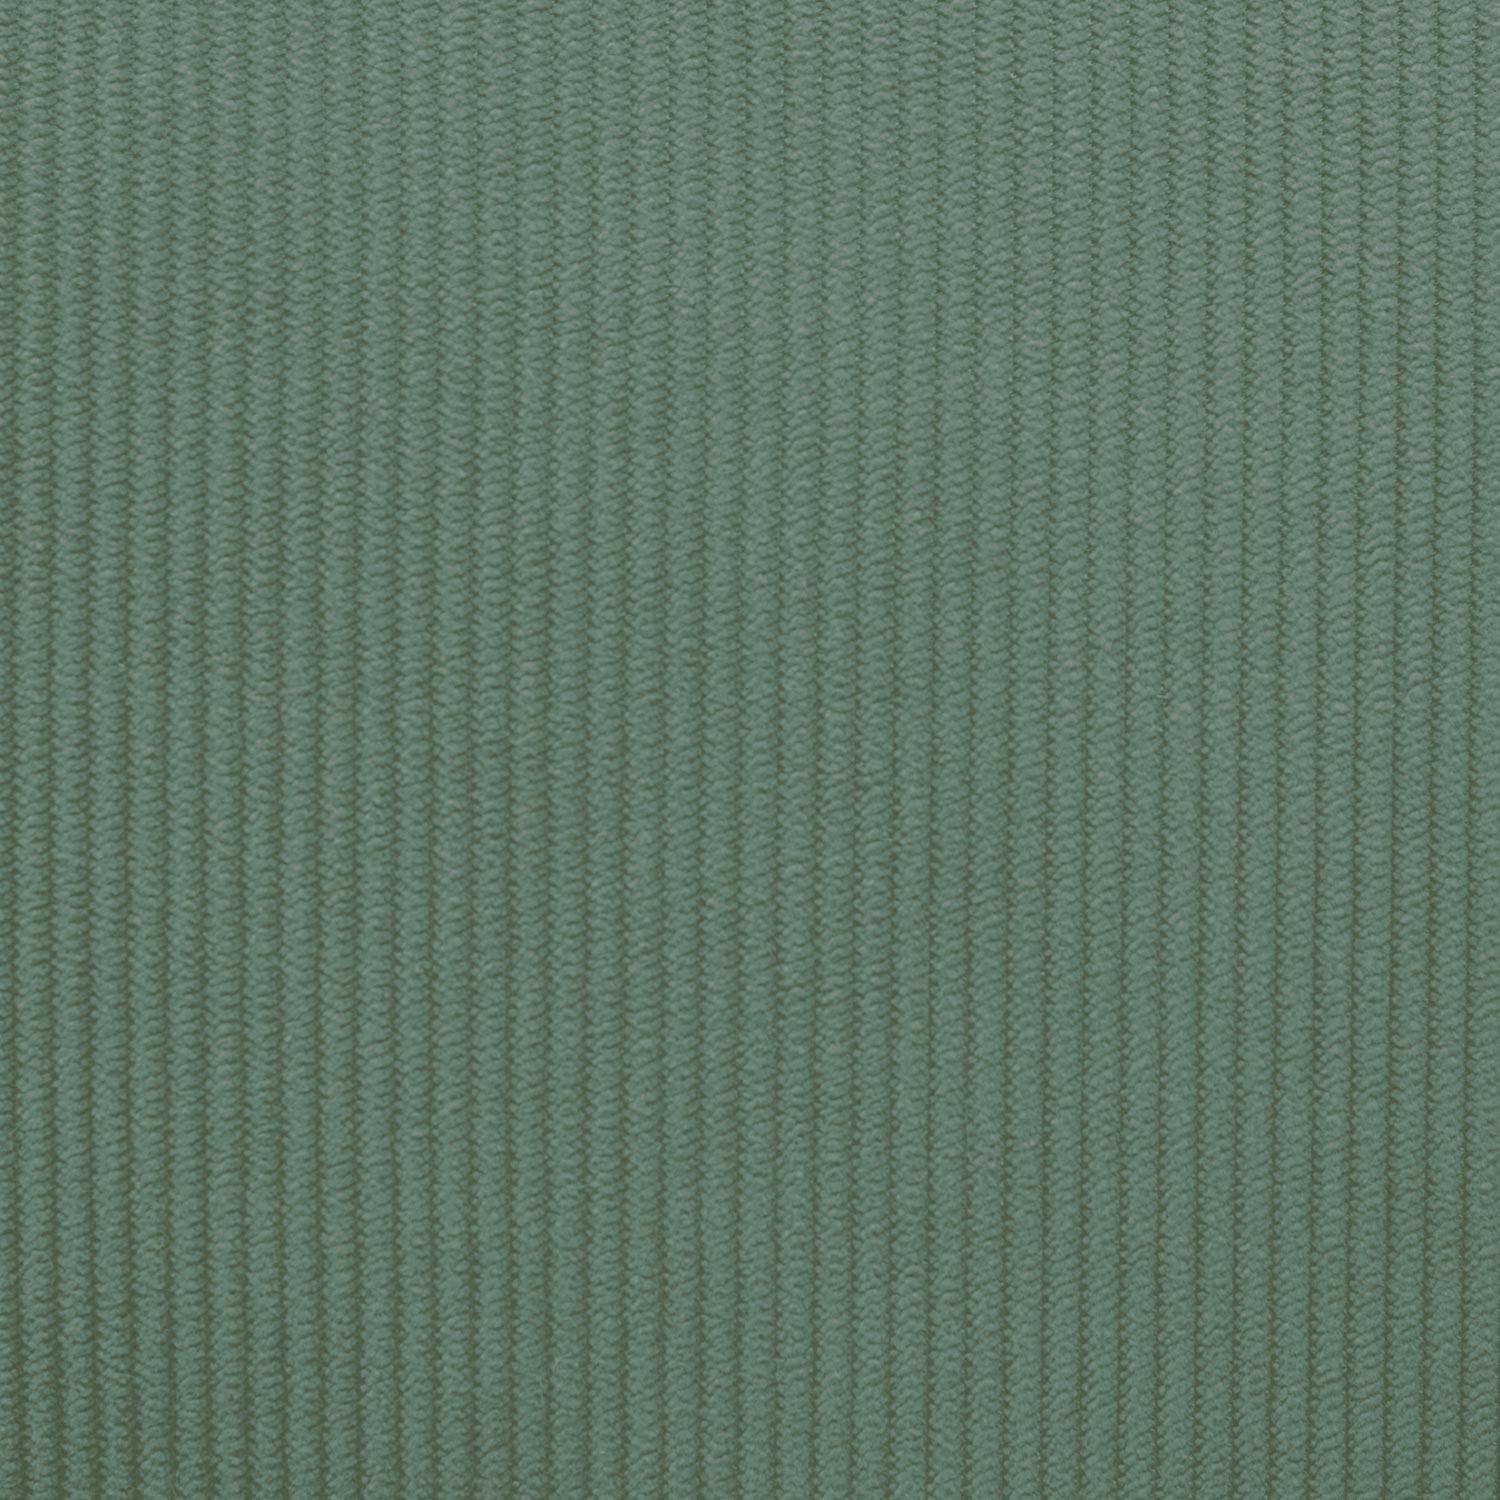 Kinderbankje in hout en celadon groen corduroy, Isak, 2-zits, B 84 x D 43,5 x H 50cm,sweeek,Photo8